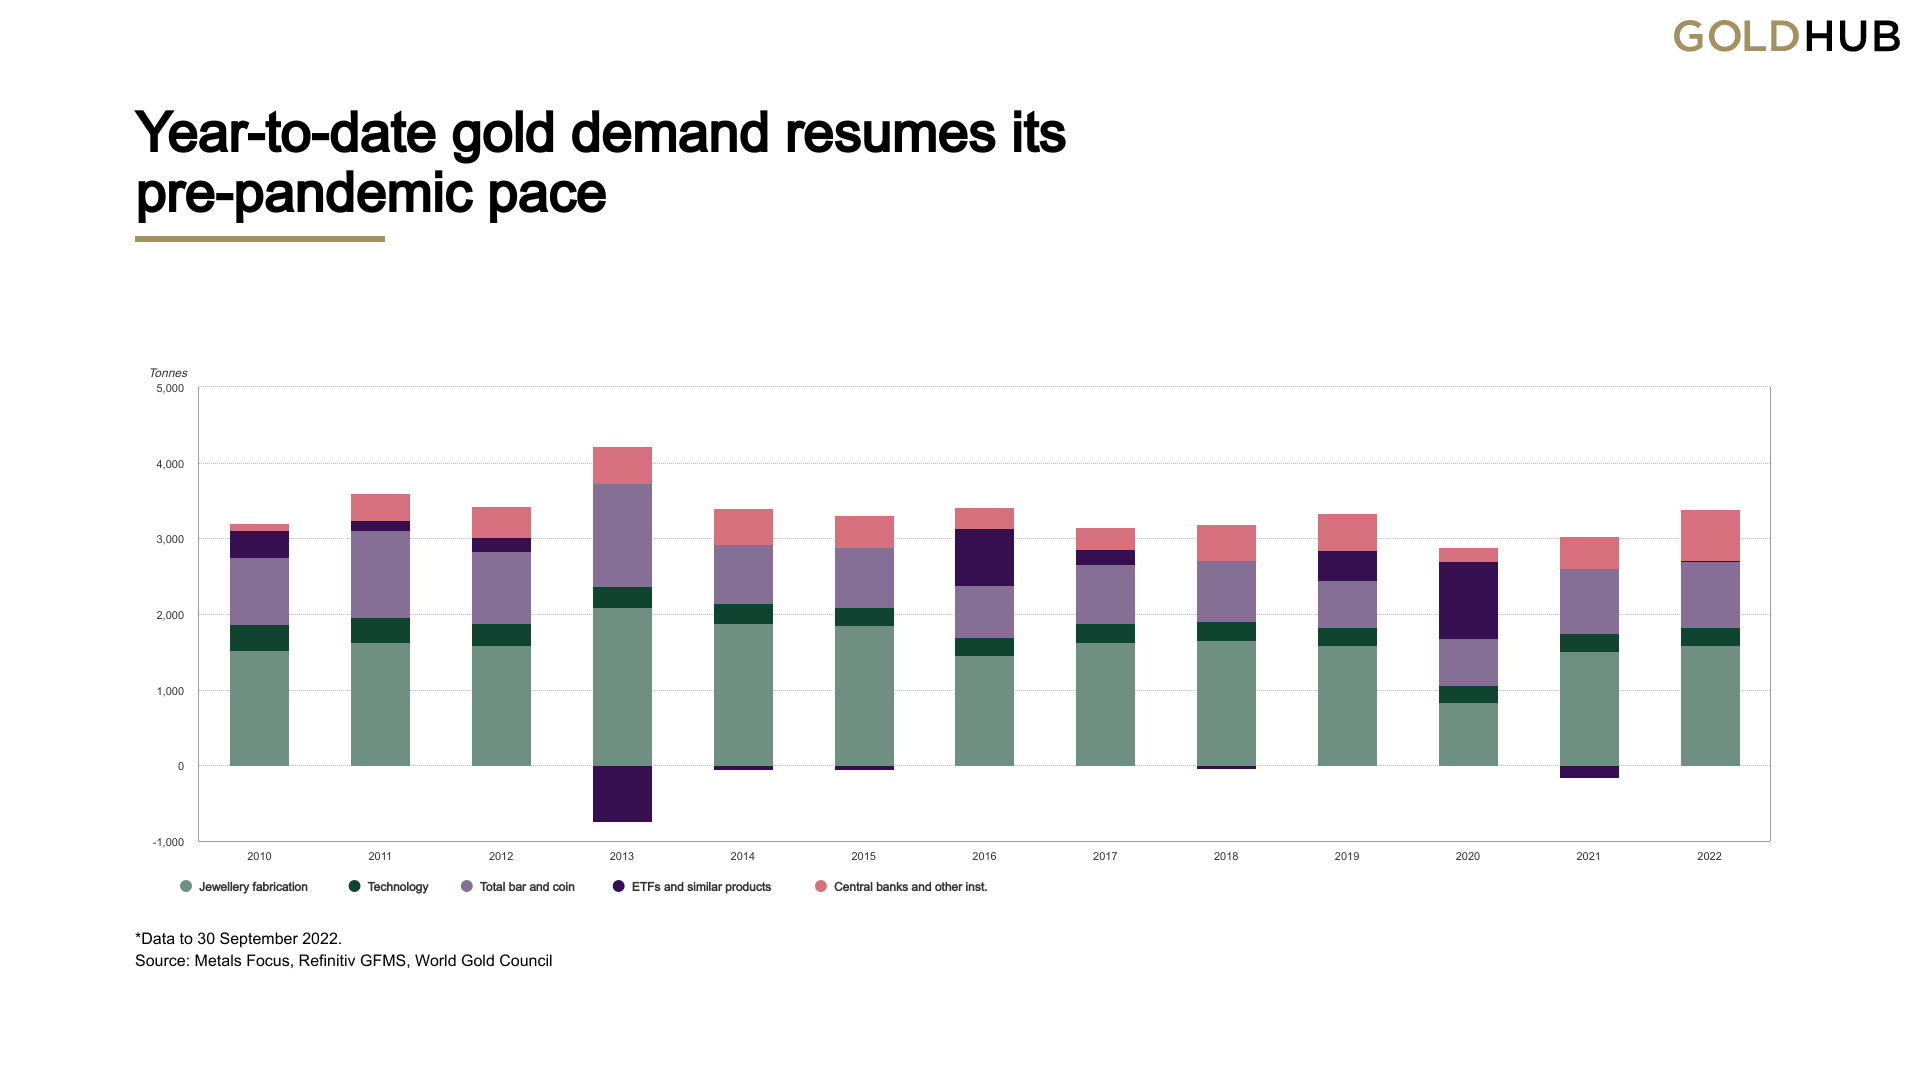 Les achats d'or des banques centrales atteignent cette année leur plus haut niveau trimestriel, 400 tonnes achetées, c'est le plus haut niveau jamais atteint.